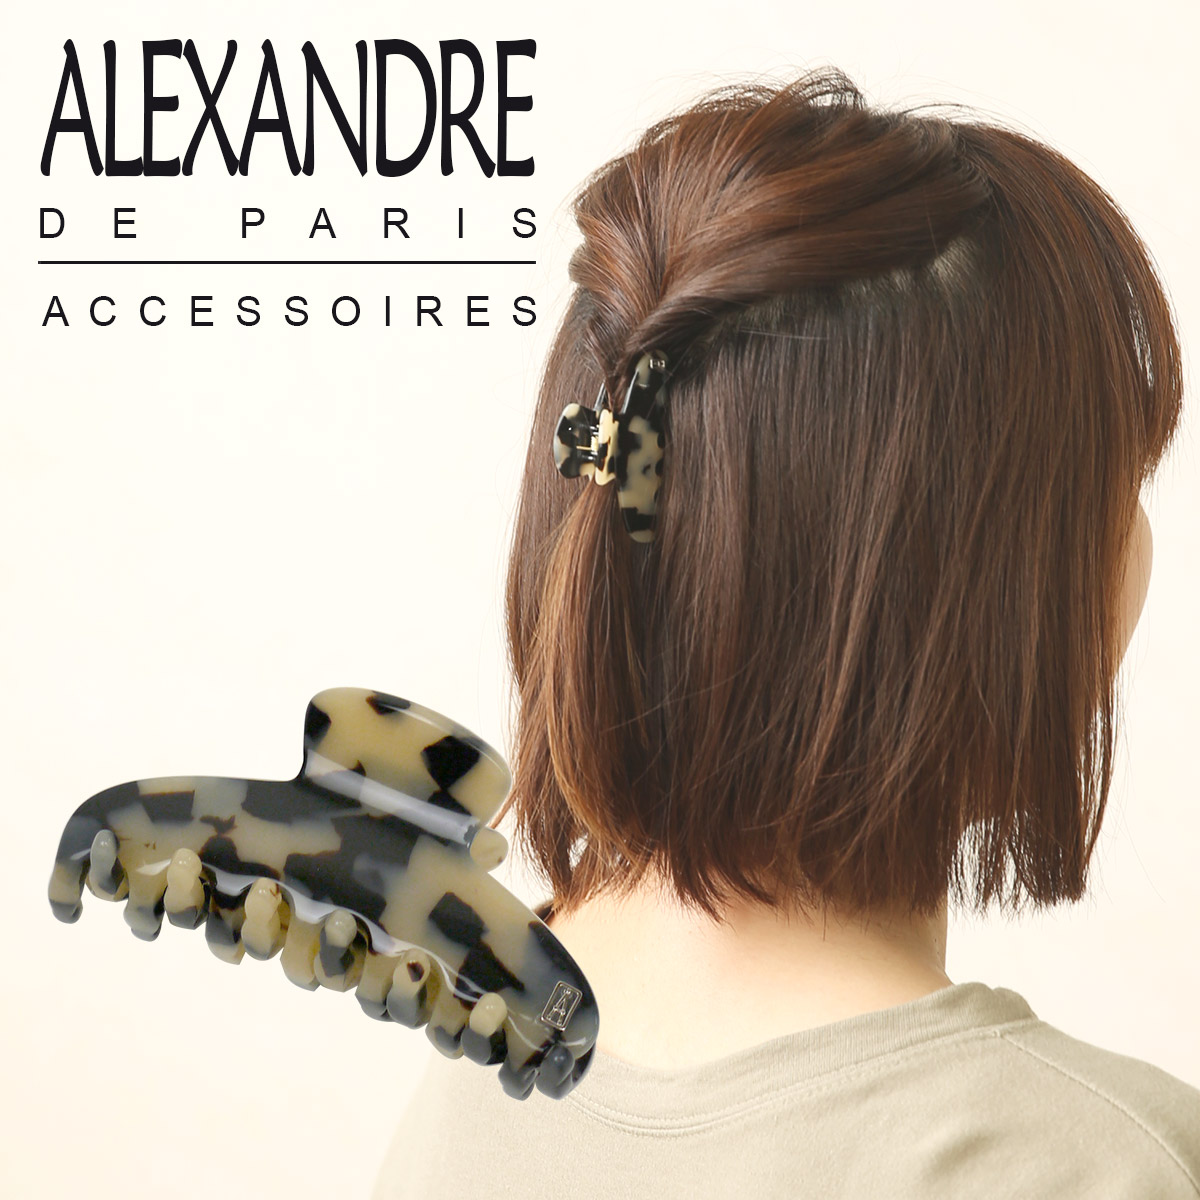 アレクサンドル ドゥ パリ クリップ(S) ALEXANDRE DE PARIS ACCS-7704 まとめ髪 ヘアアレンジ 小さめ シンプル ブランド